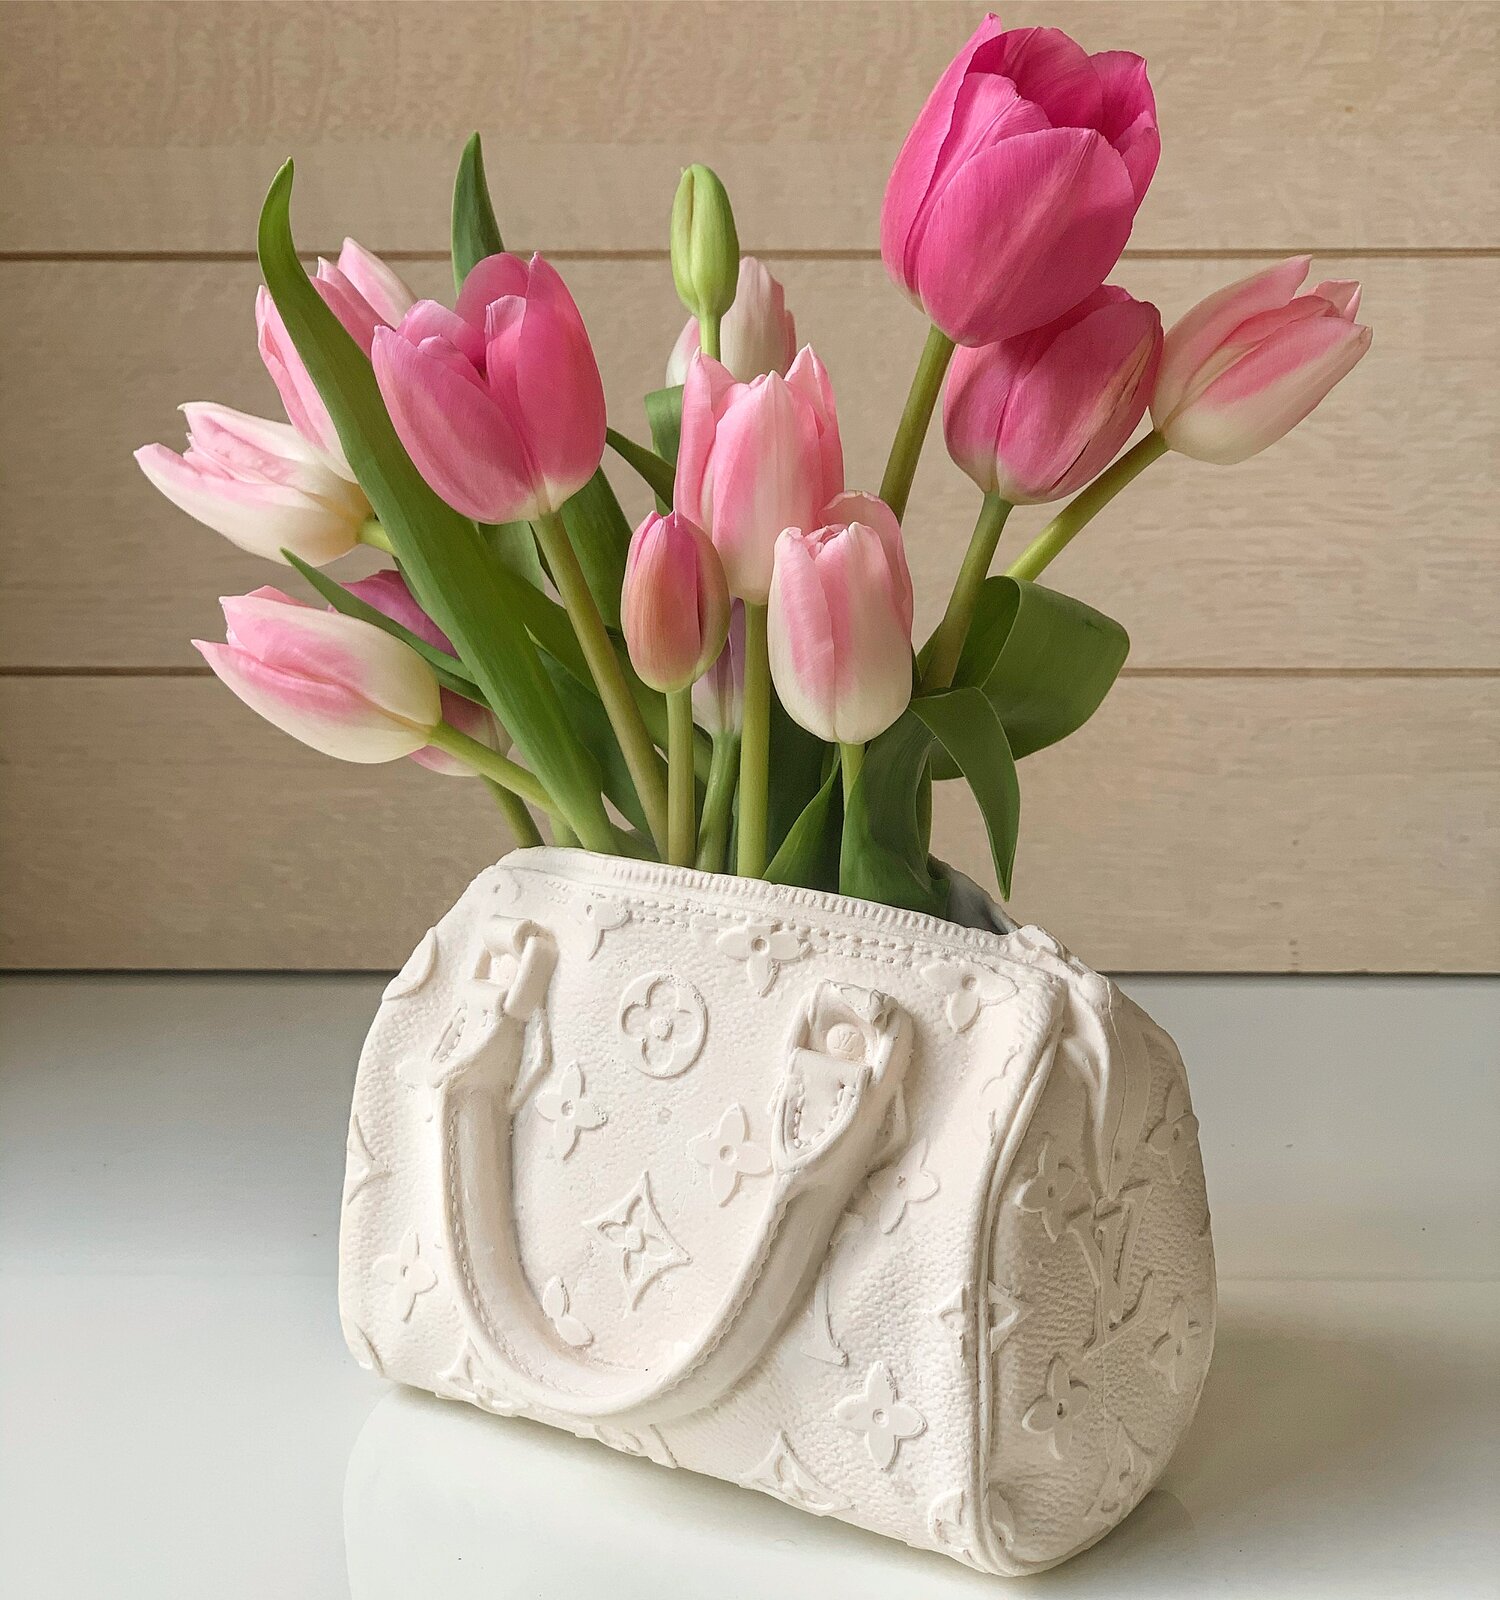 Bodega Rose's Louis Vuitton Mini Speedy Bag Vase